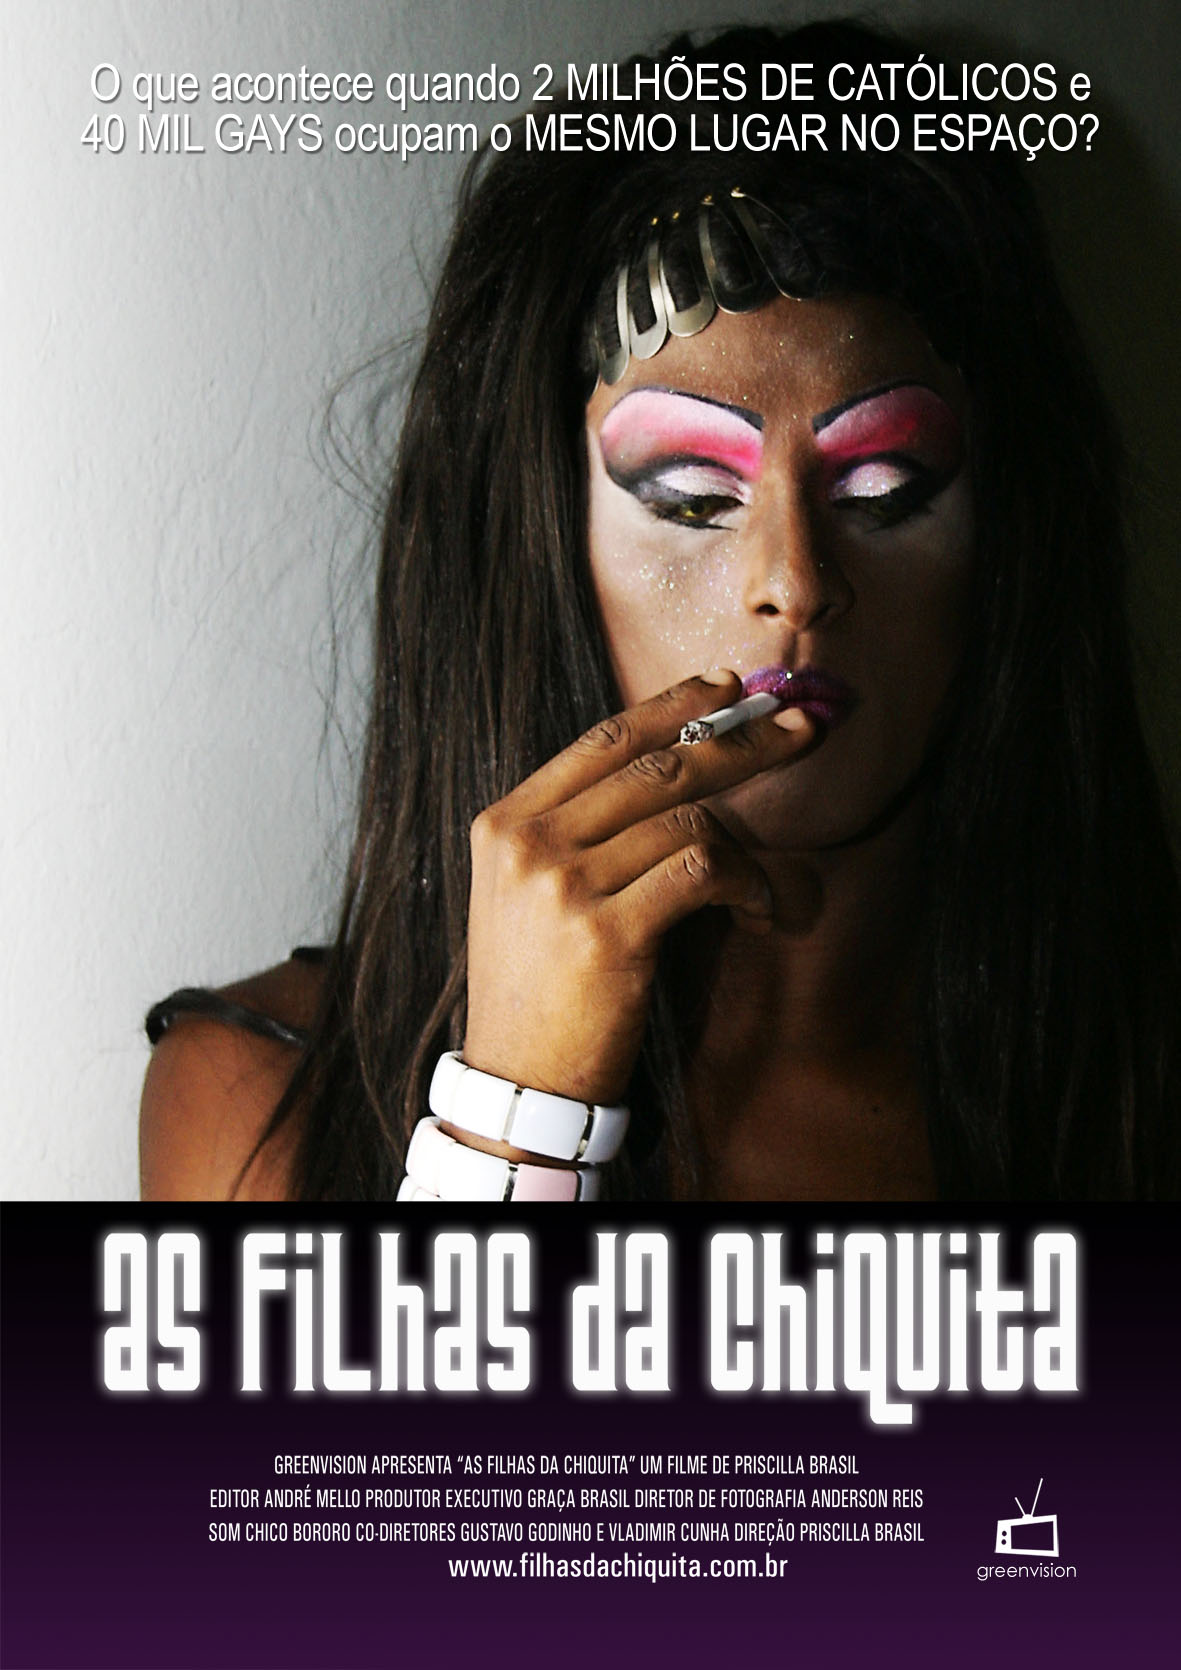 Poster de divulgação do documentário sobre a festa Filhas de Chiquita